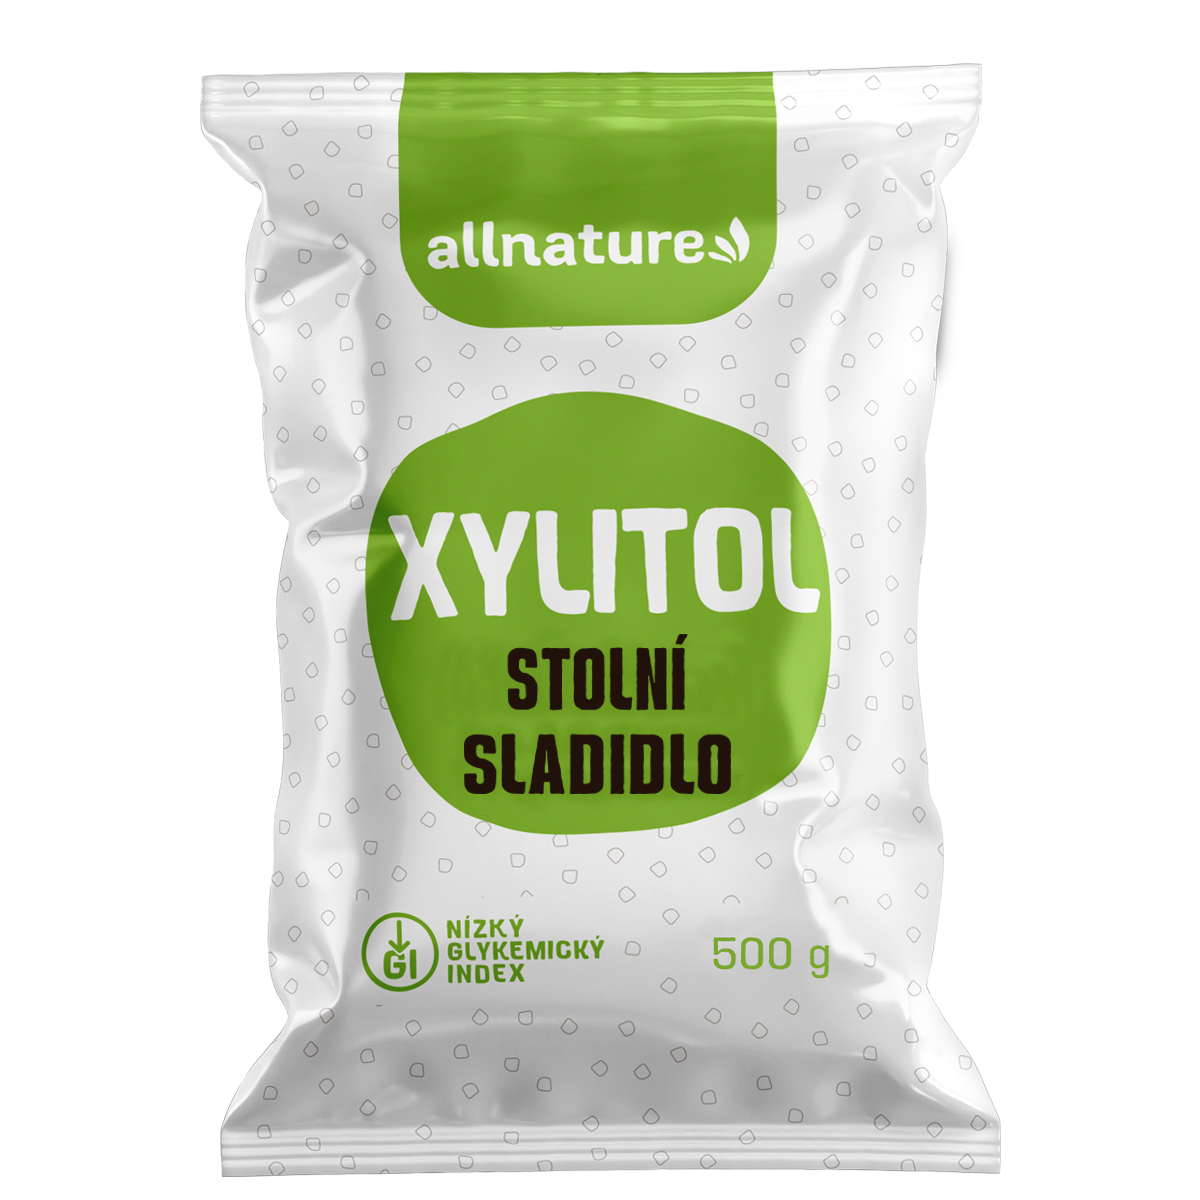 Allnature Xylitol - 500 g - sladký a zdravý, přítel vašich zubů